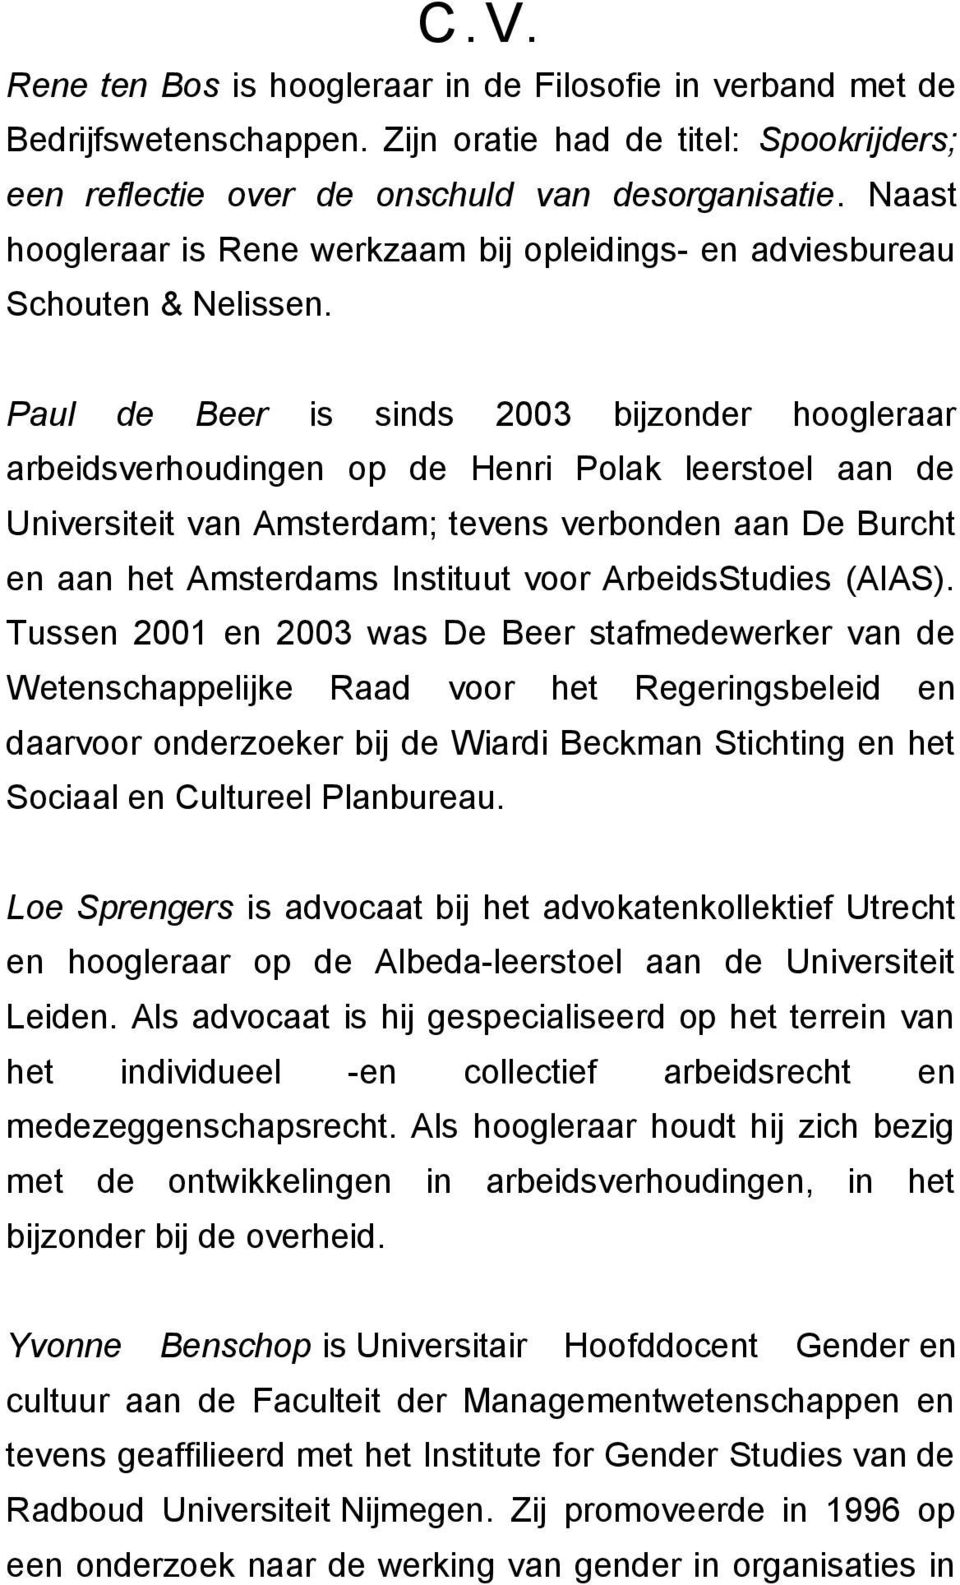 Paul de Beer is sinds 2003 bijzonder hoogleraar arbeidsverhoudingen op de Henri Polak leerstoel aan de Universiteit van Amsterdam; tevens verbonden aan De Burcht en aan het Amsterdams Instituut voor